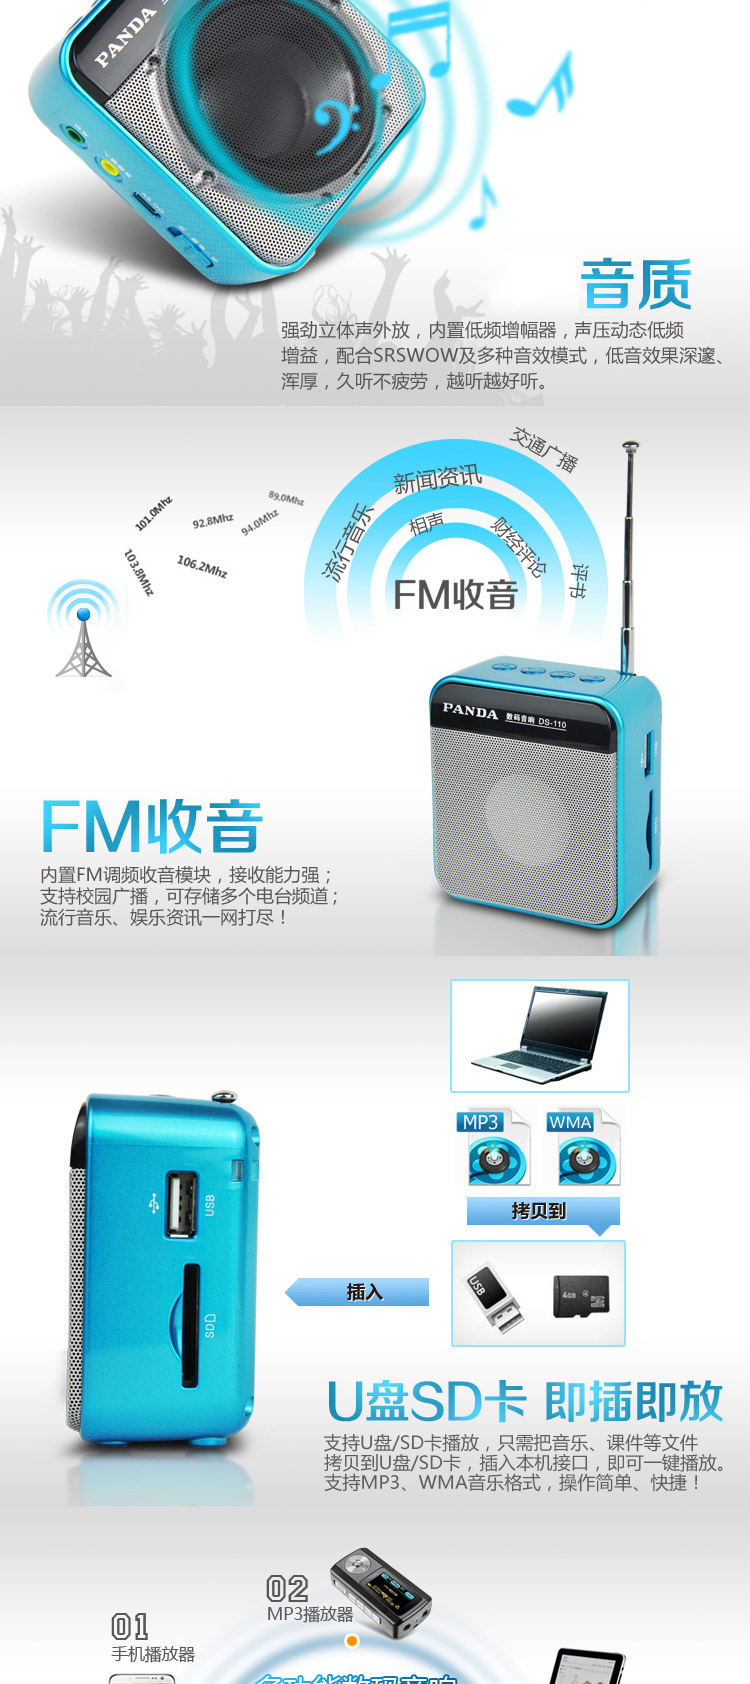 熊猫数码音响播放器DS-110 绿 插卡音箱 立体声收音机